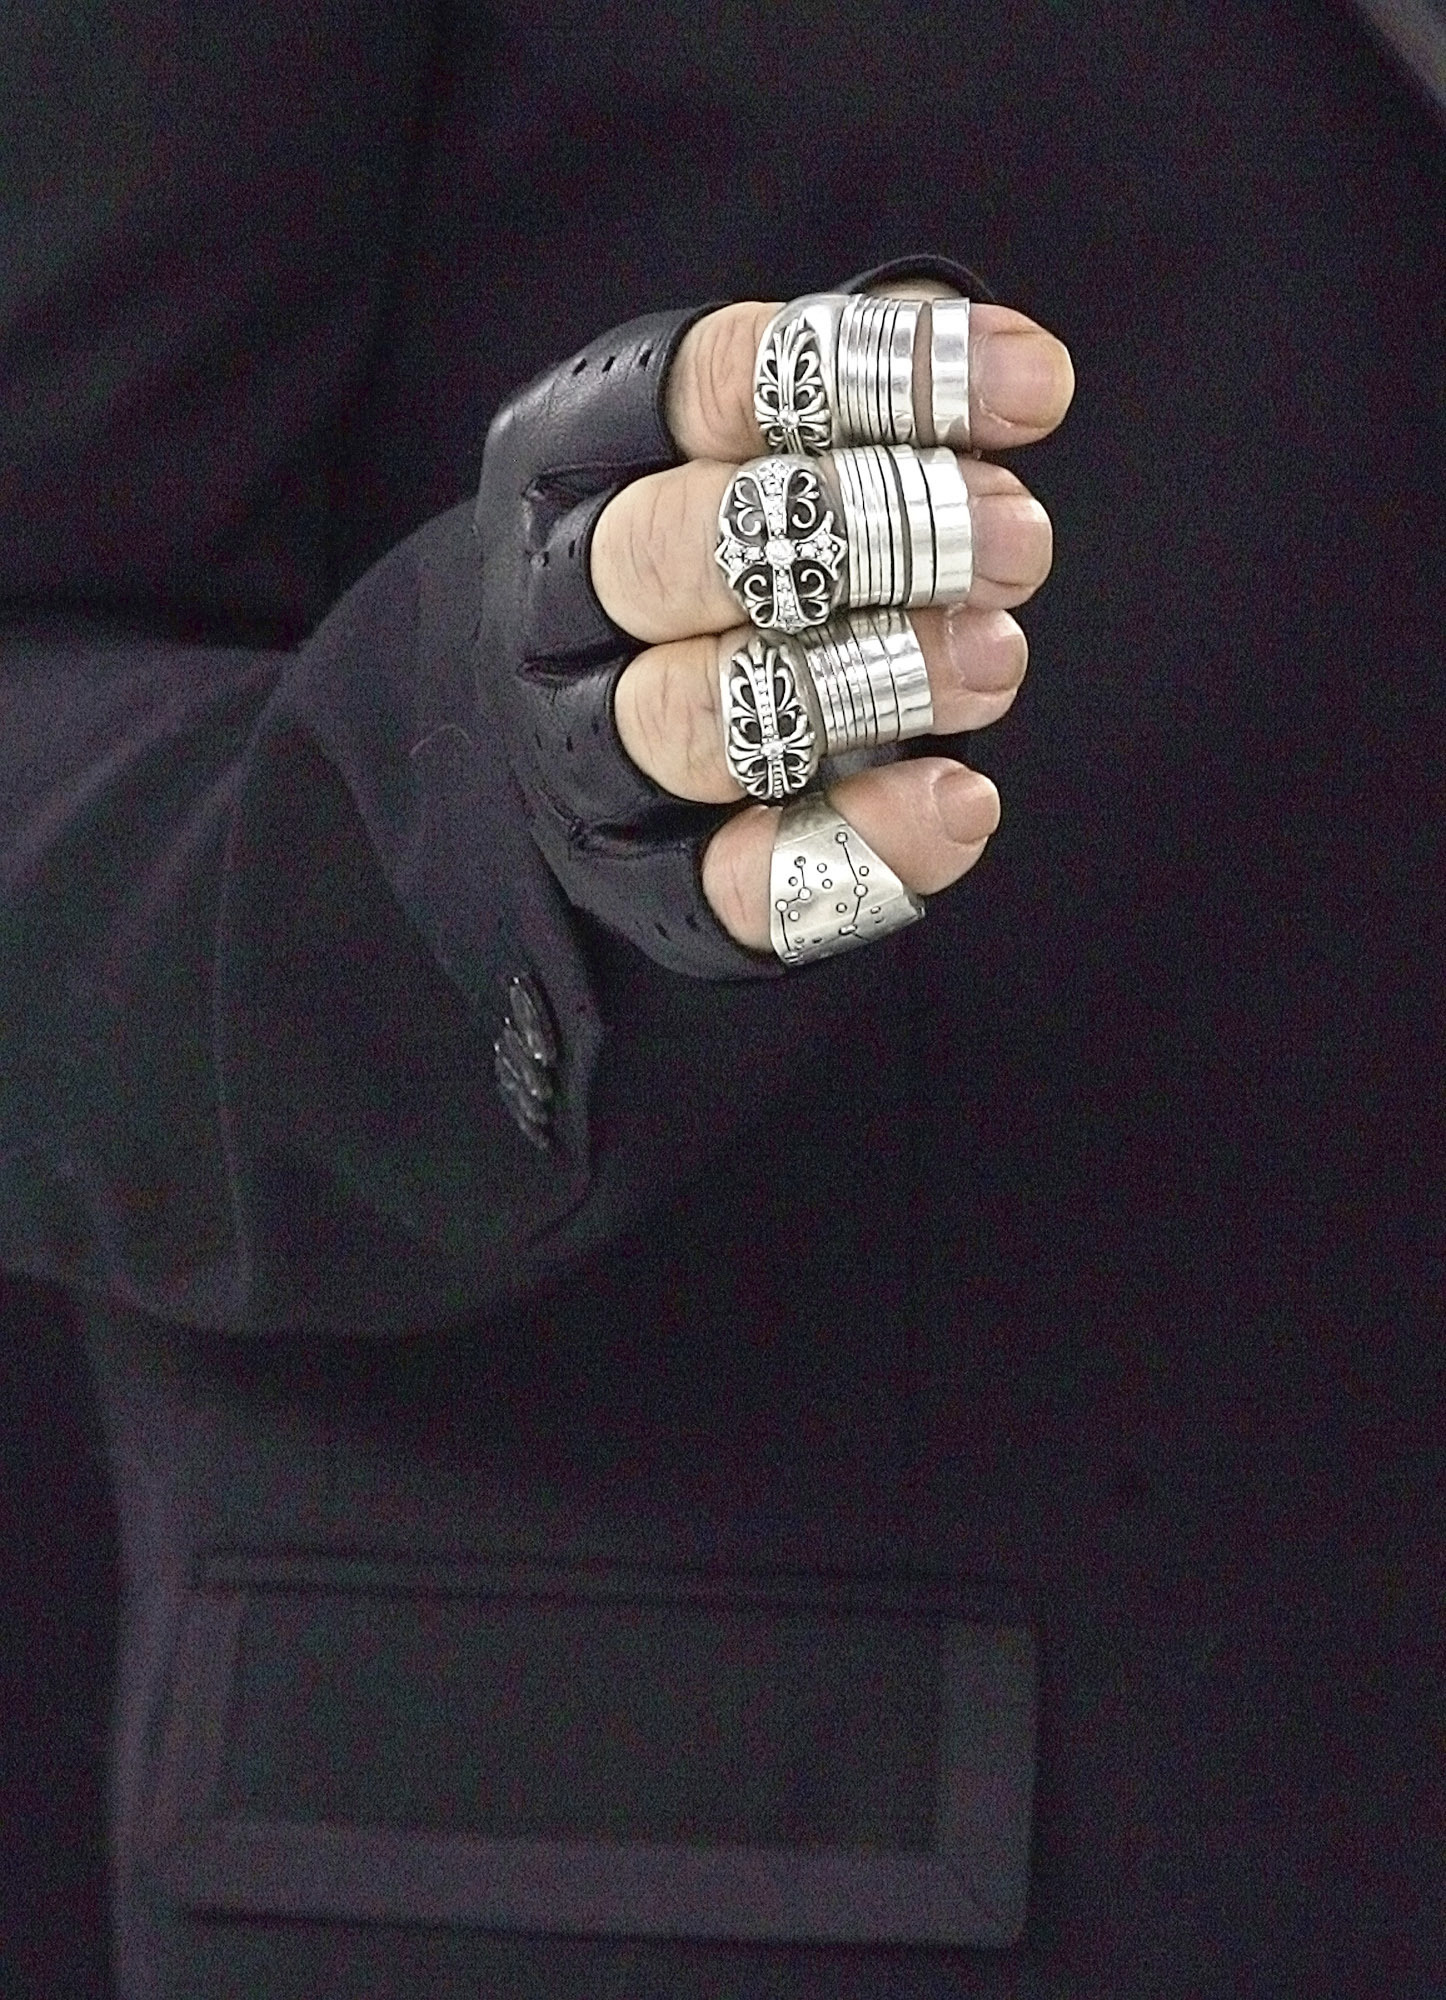 Esta foto de archivo del 25 de enero, 2005 muestra la mano del diseñador de moda alemán Karl Lagerfeld, visto entre bastidores antes de la presentación de la primavera-verano 2005 de alta costura colección de moda que diseñó para Chanel.